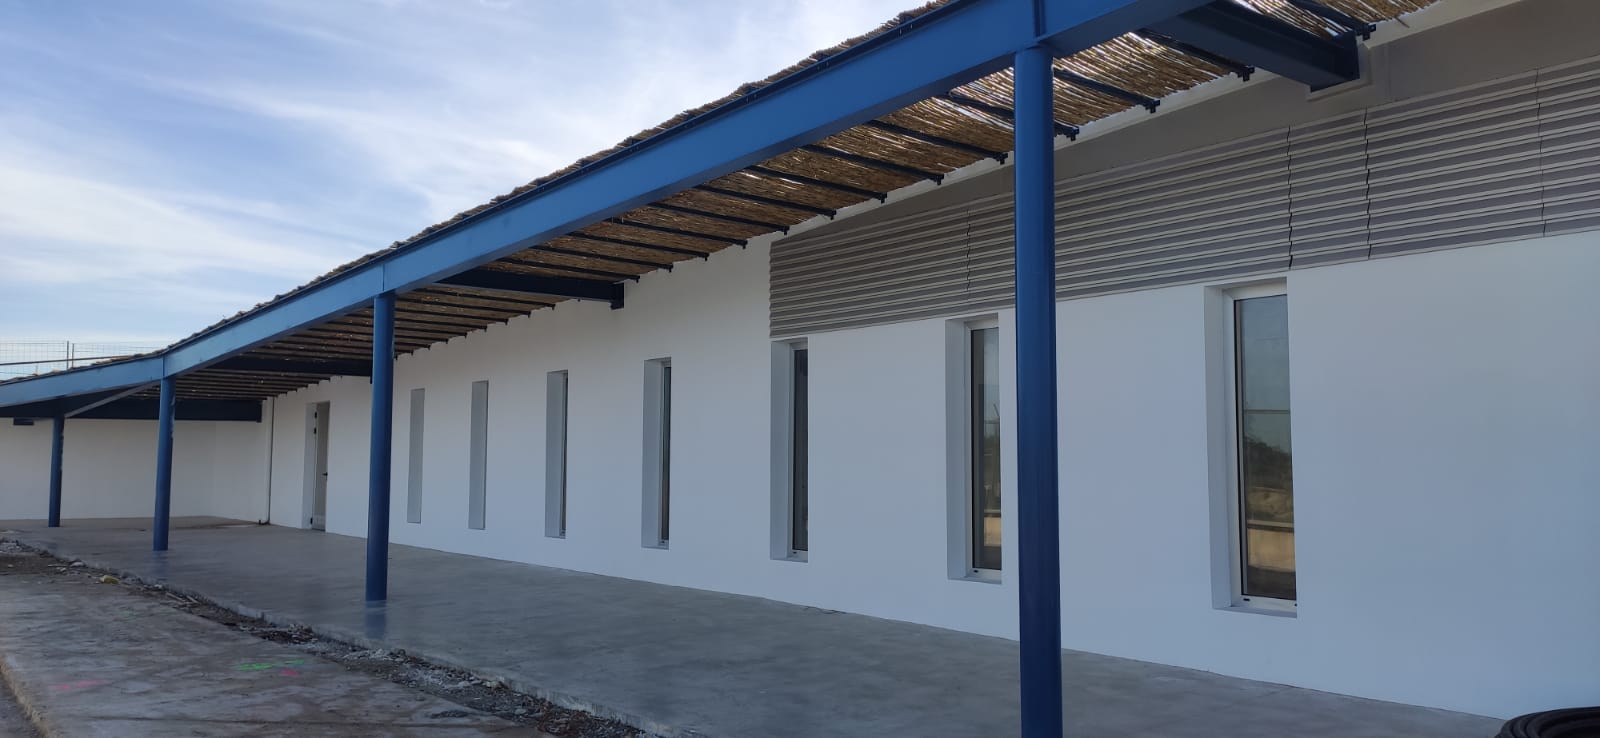 El puerto de la Savina cuenta con un nuevo edificio para la cofradía de pescadores de Formentera